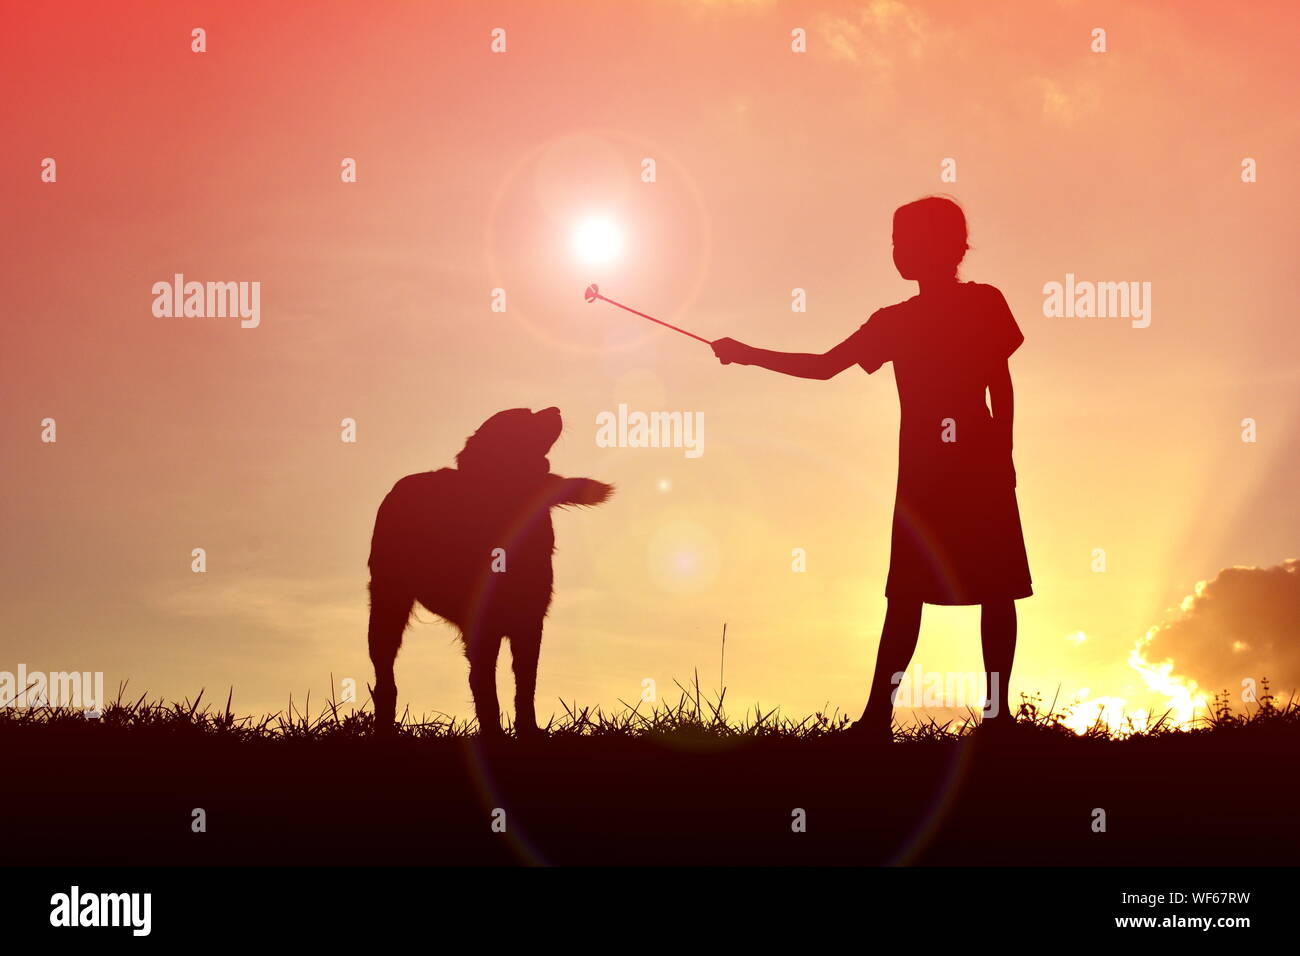 Silueta Chica sujetando la Varita Mágica de pie con perro en campo contra el cielo durante la puesta de sol Foto de stock